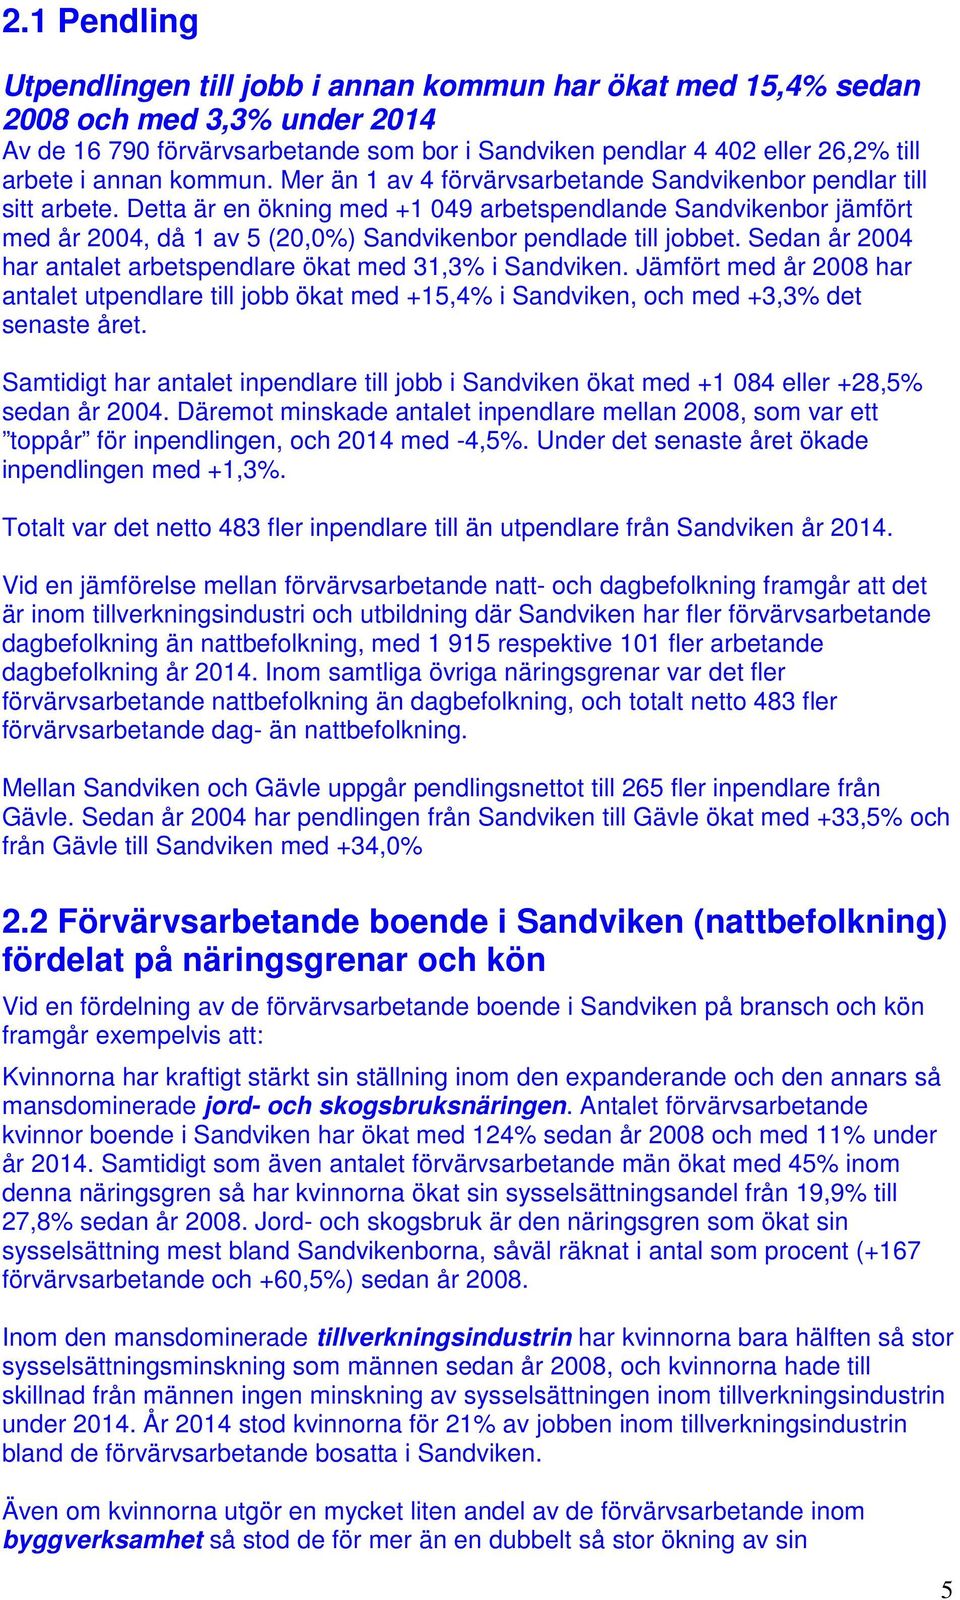 Detta är en ökning med +1 049 arbetspendlande Sandvikenbor jämfört med år 2004, då 1 av 5 (20,0%) Sandvikenbor pendlade till jobbet.